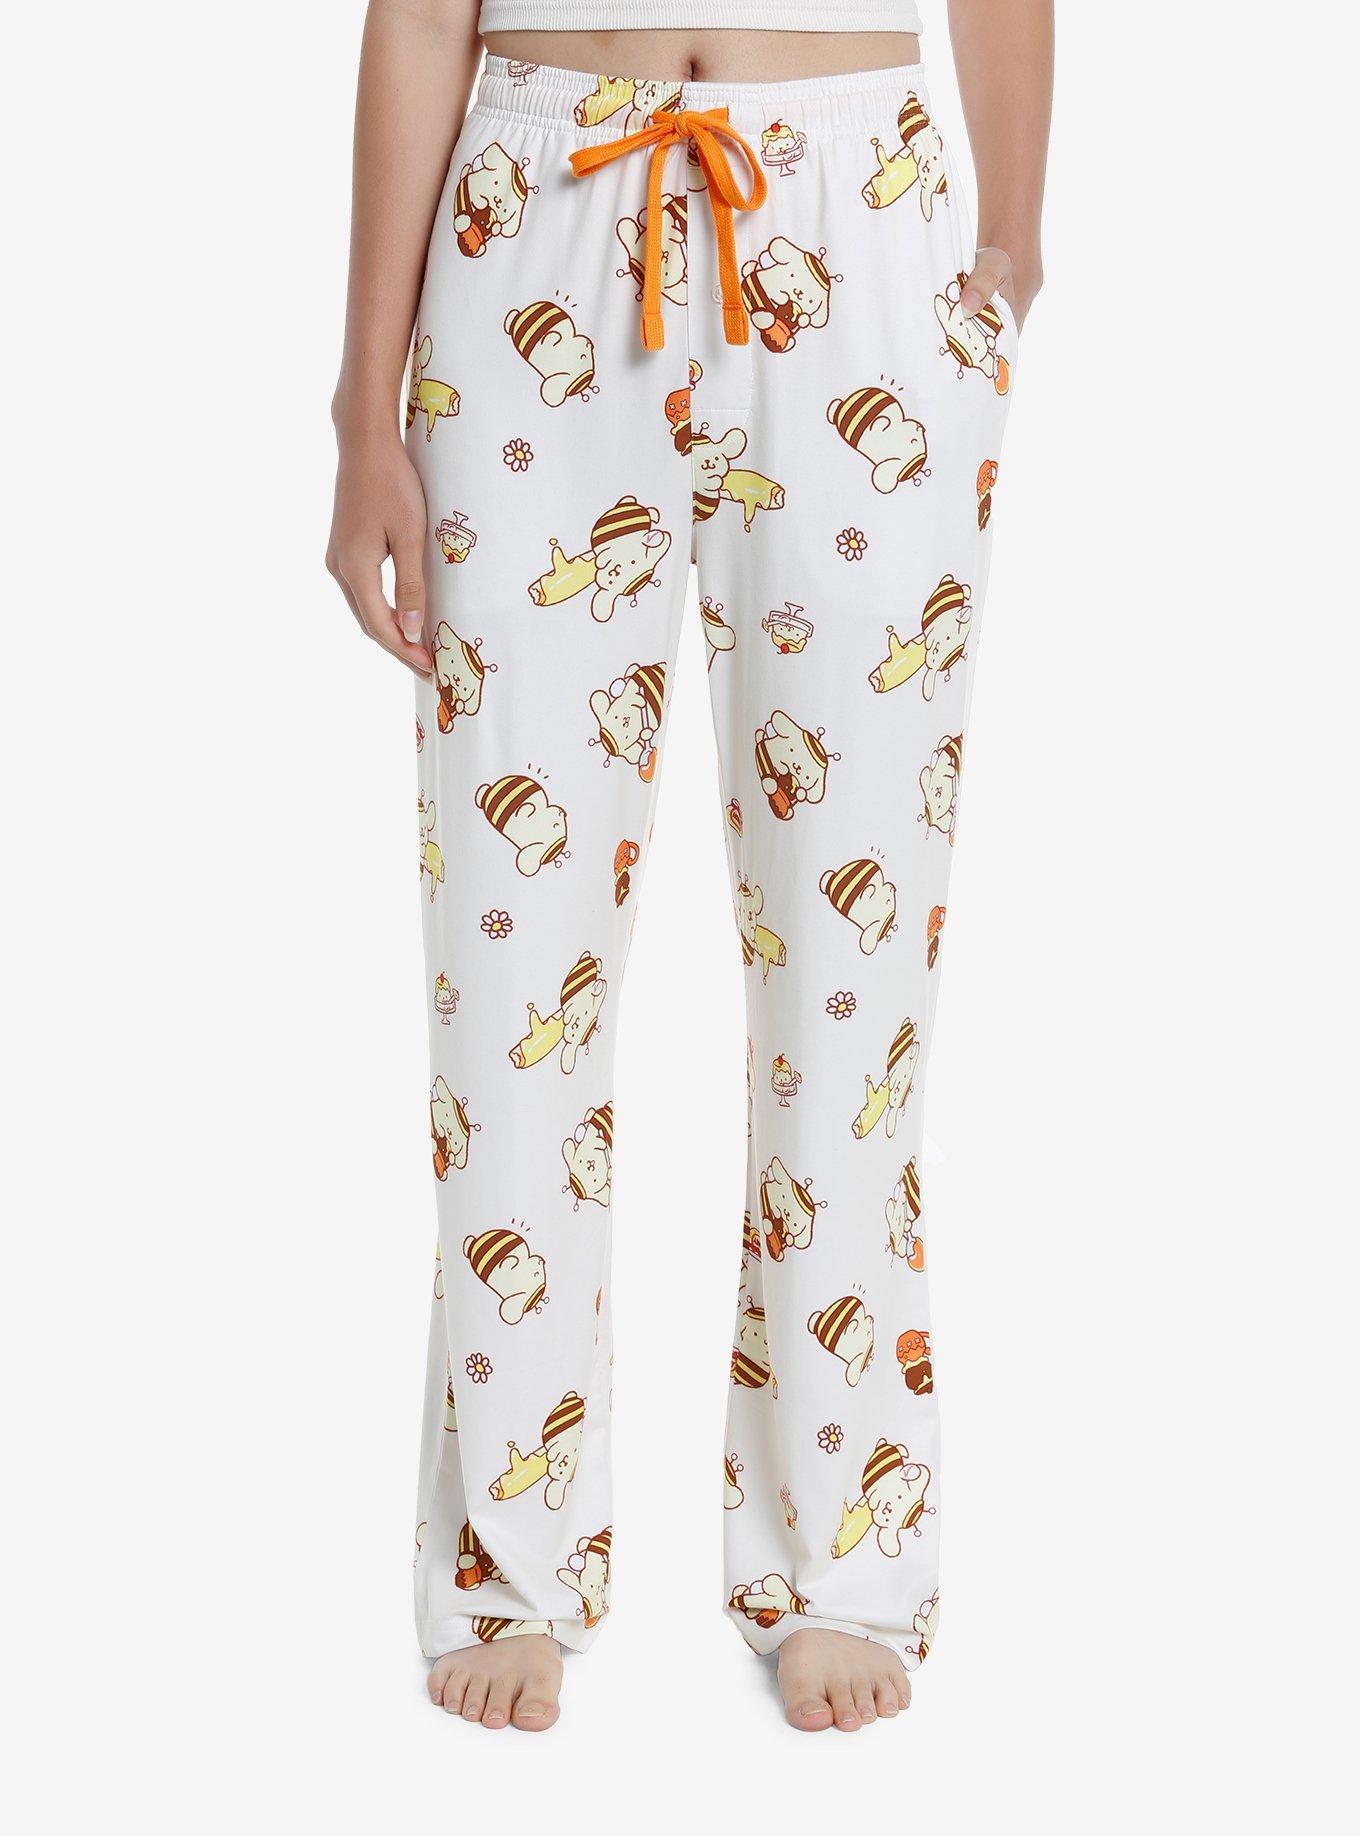 Pompompurin Honeybee Pastries Pajama Pants